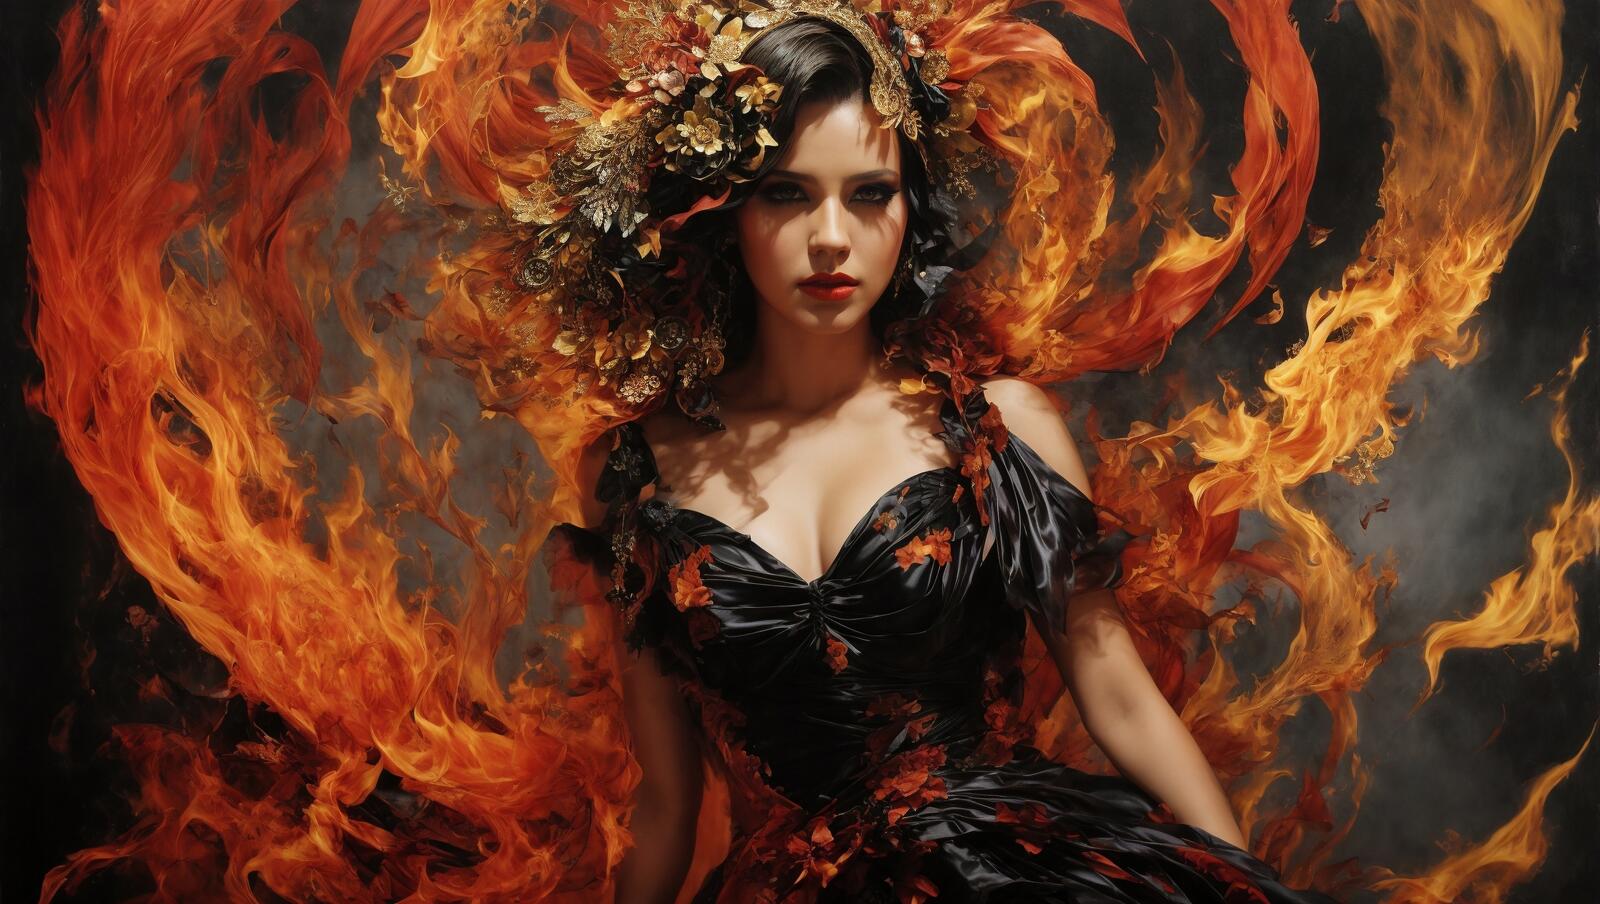 Бесплатное фото Женщина в черном платье с огромной огненной темой за спиной.